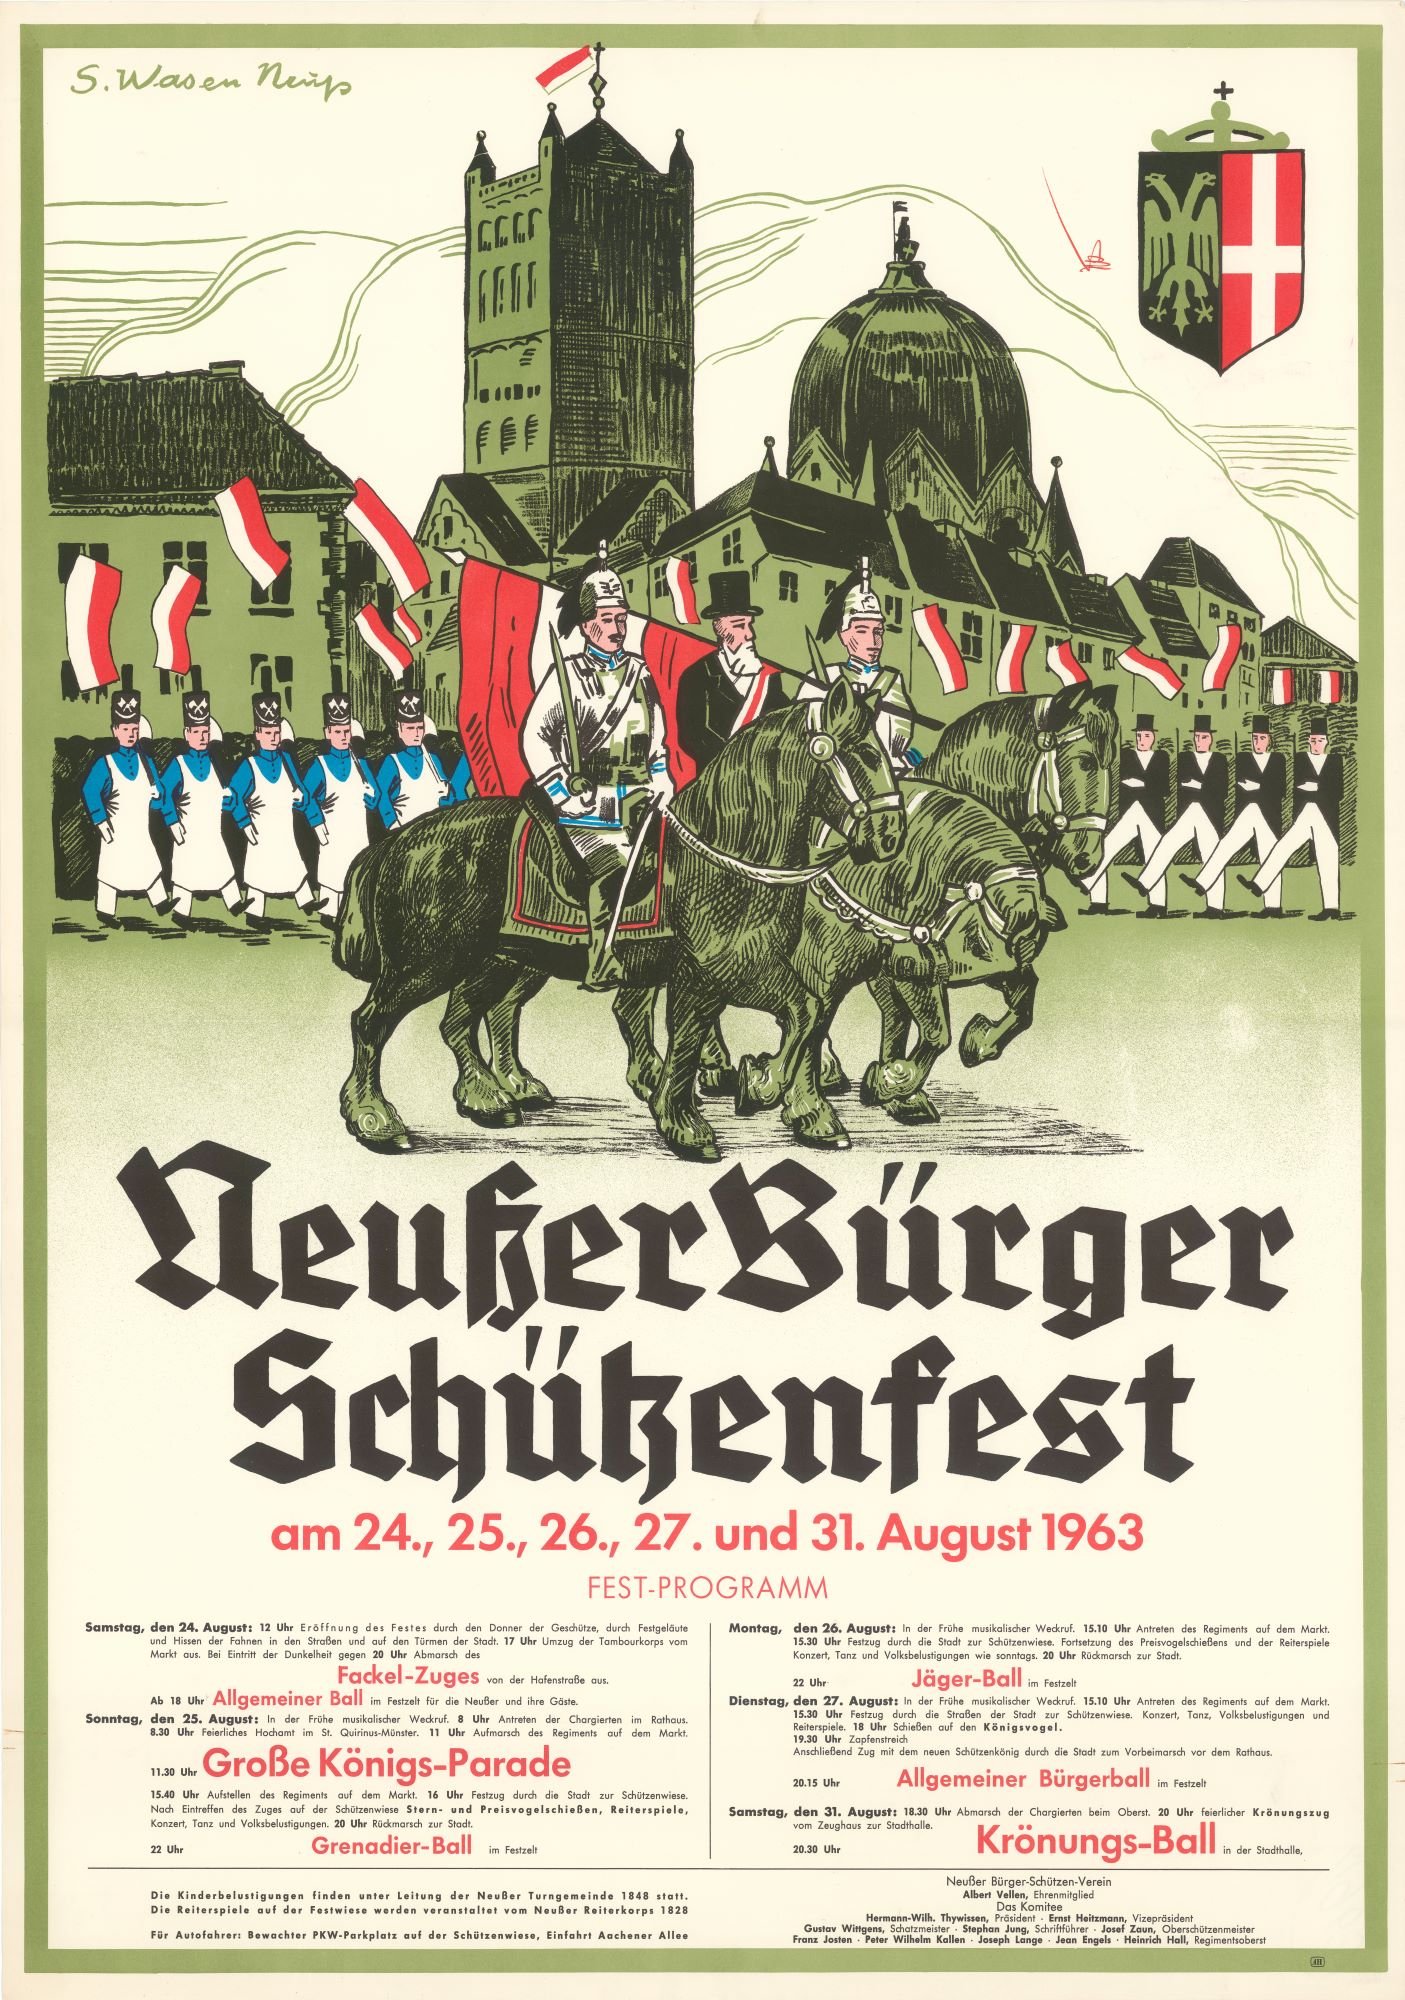 Festplakat Schützenfest Neuss 1963 (Rheinisches Schützenmuseum Neuss CC BY-NC-SA)